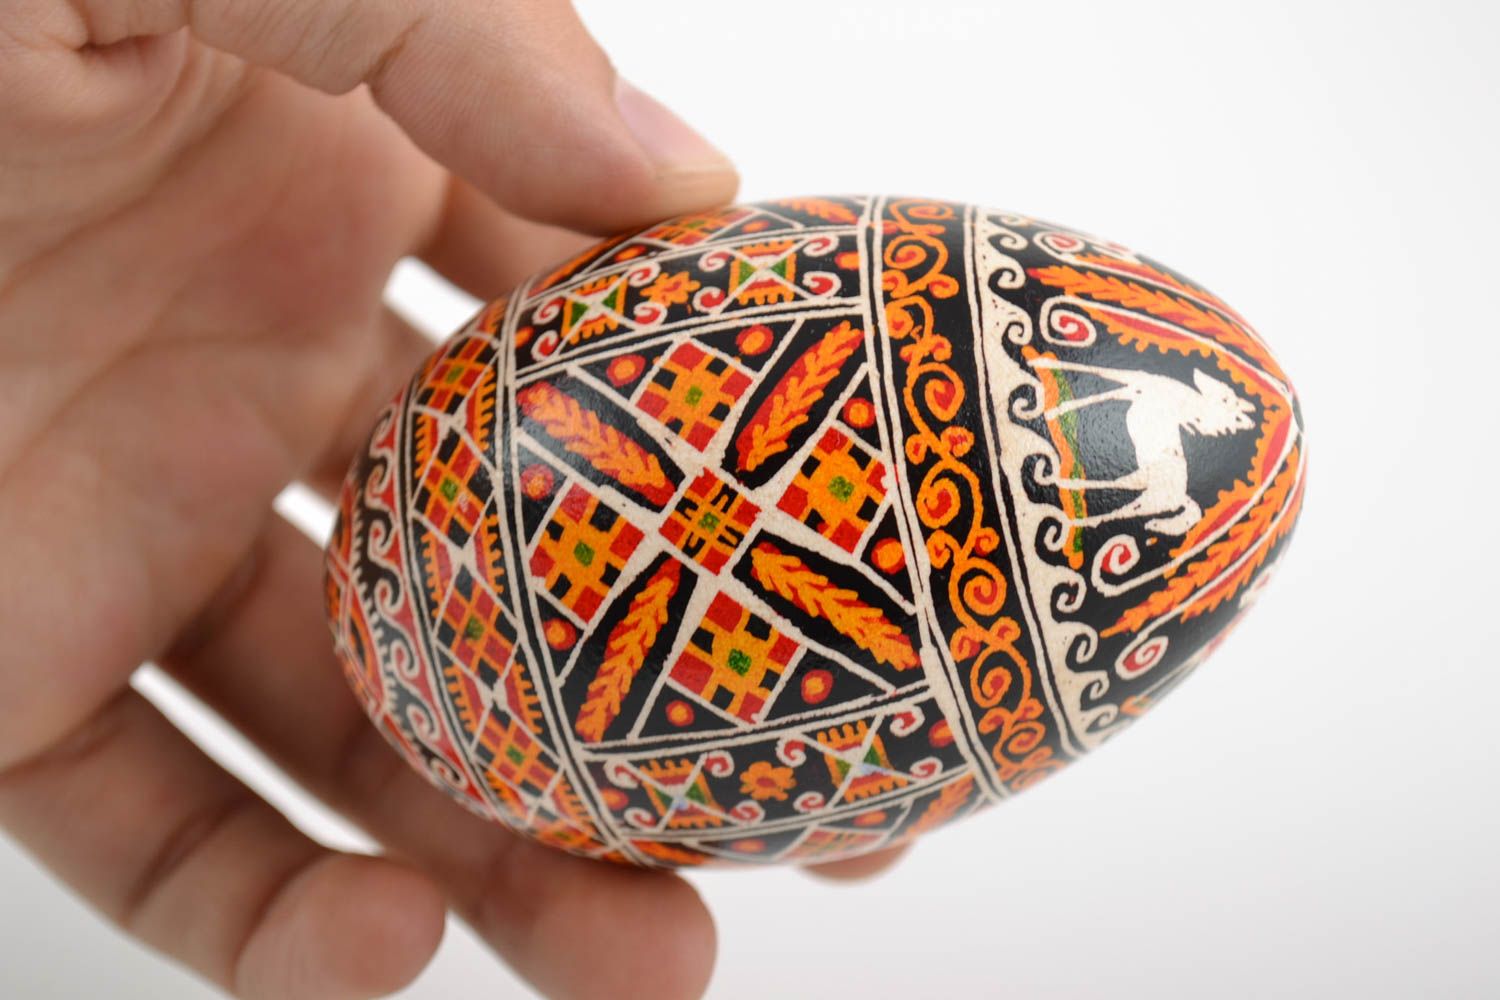 Расписное гусиное яйцо с орнаментом славянская символика цветное ручная работа фото 2